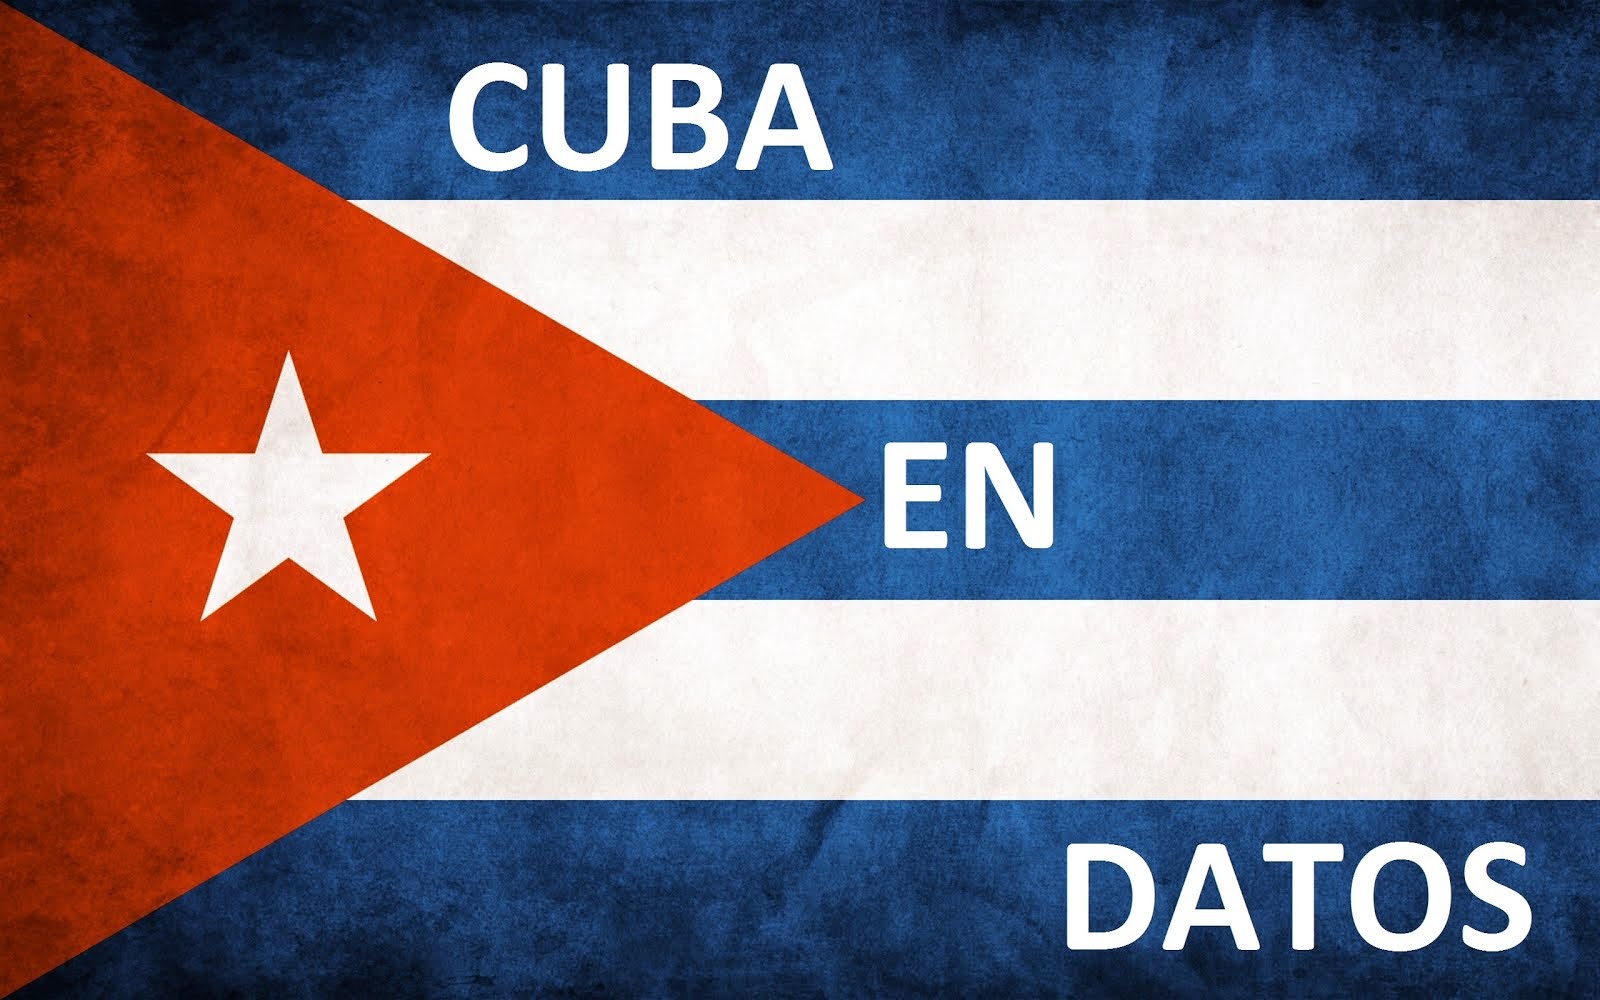 PINCHA EN LA IMAGEN: Cuba en datos